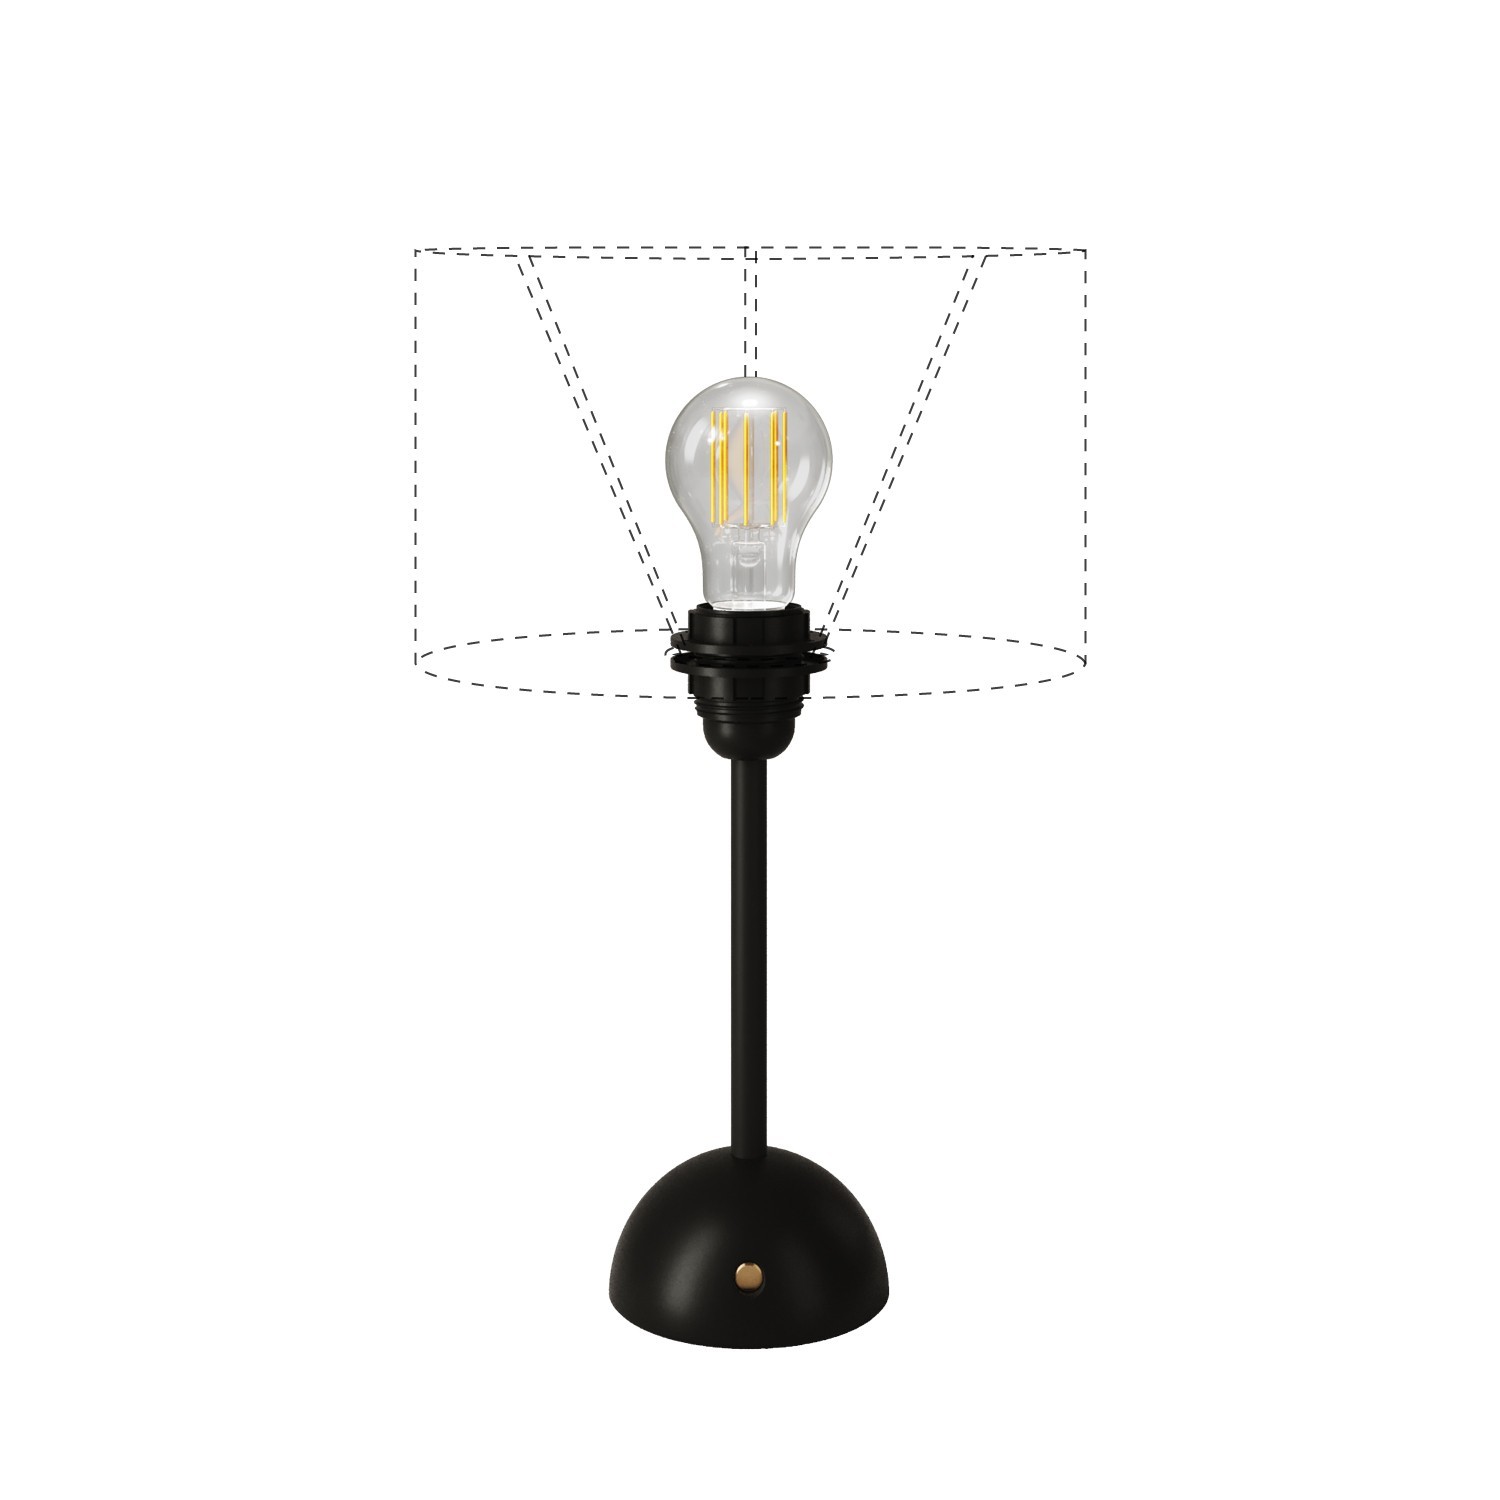 Prijenosna i punjiva svjetiljka Cabless12 sa žaruljom i prihvatom za sjenilo